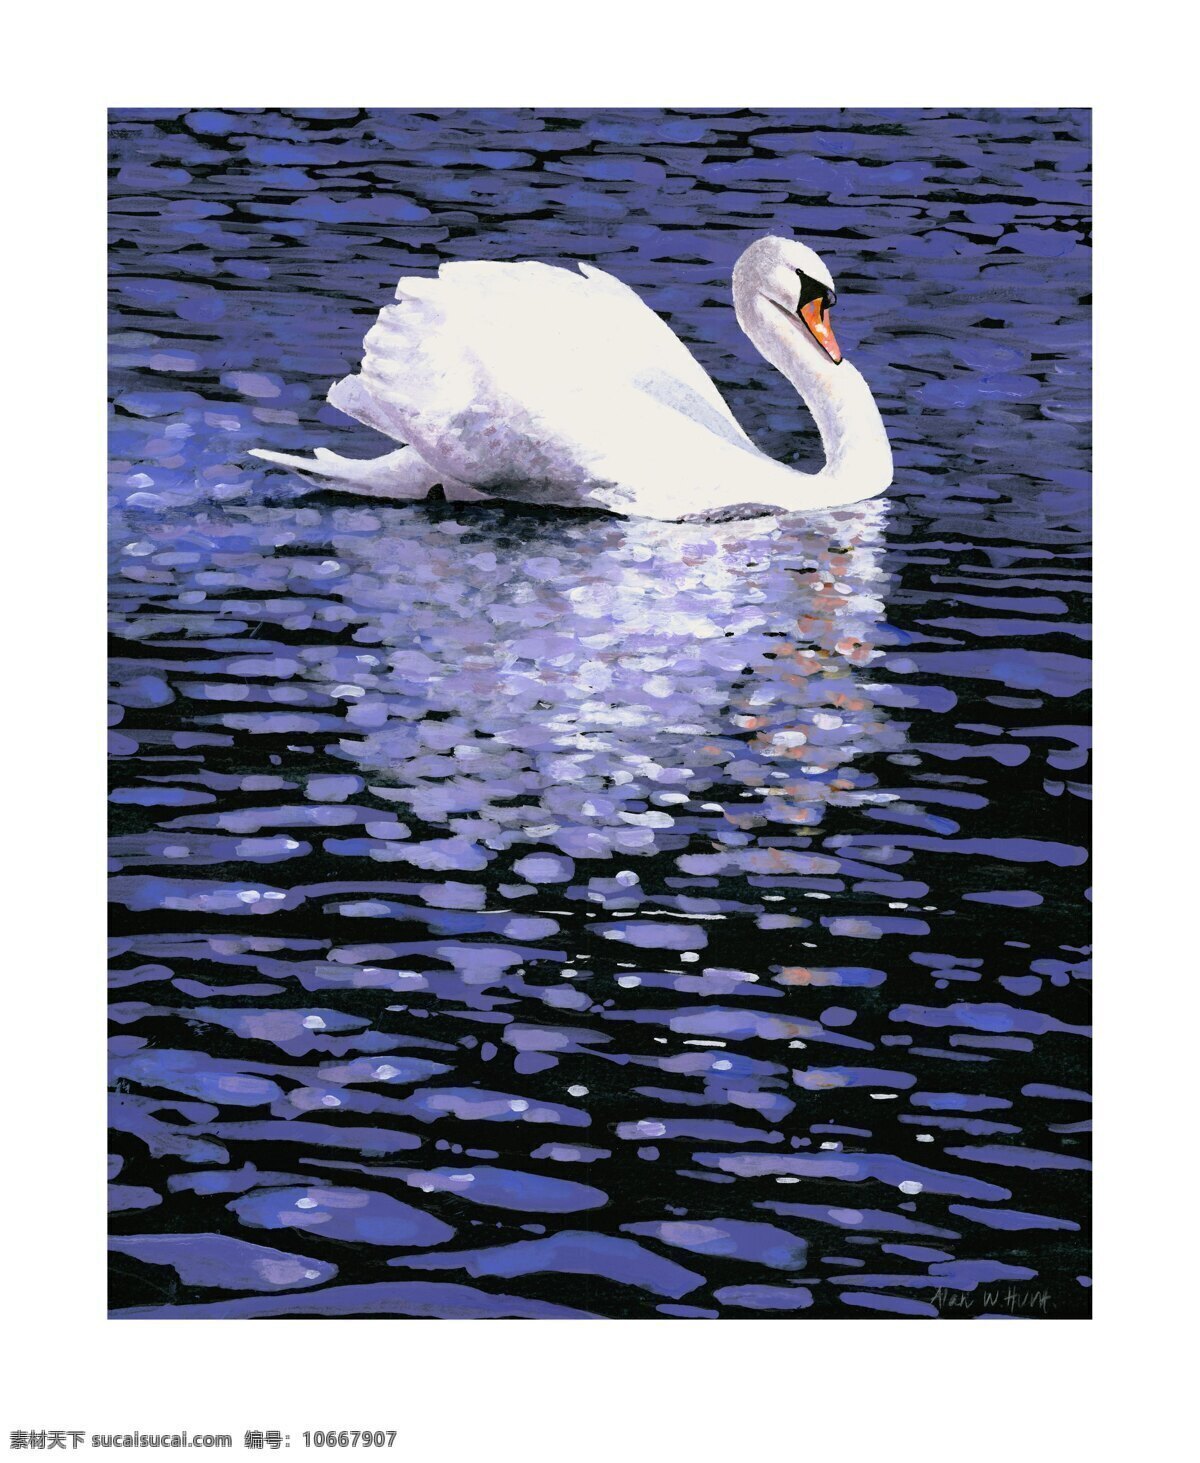 湖面上天鹅 湖面上 天鹅 白色 休息 游弋 波纹 波光 鸟类 生物世界